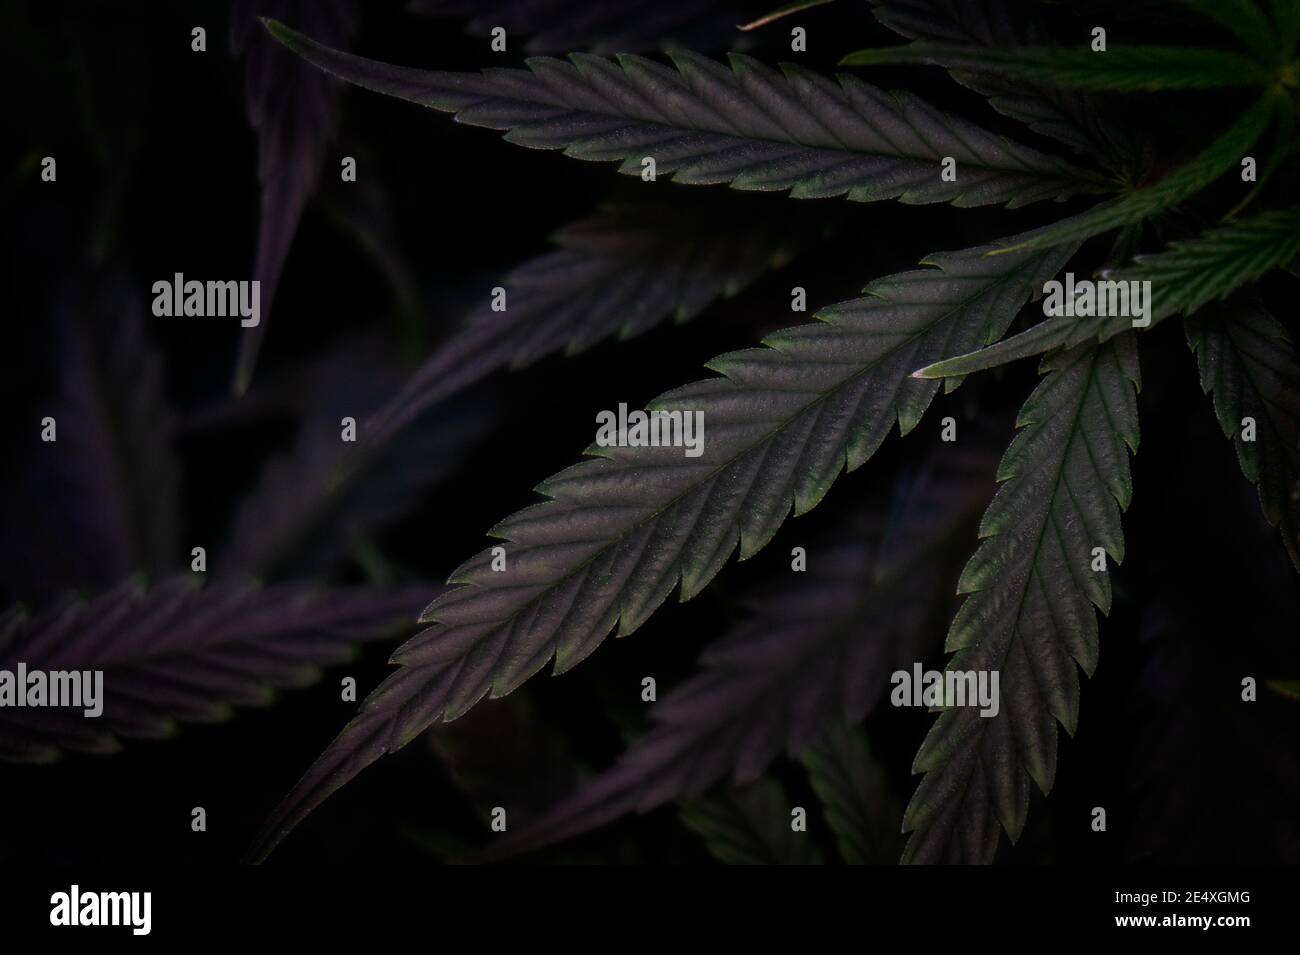 Cannabis Blatt Textur auf grünem Laub Hintergrund, dunkles Thema Stockfoto